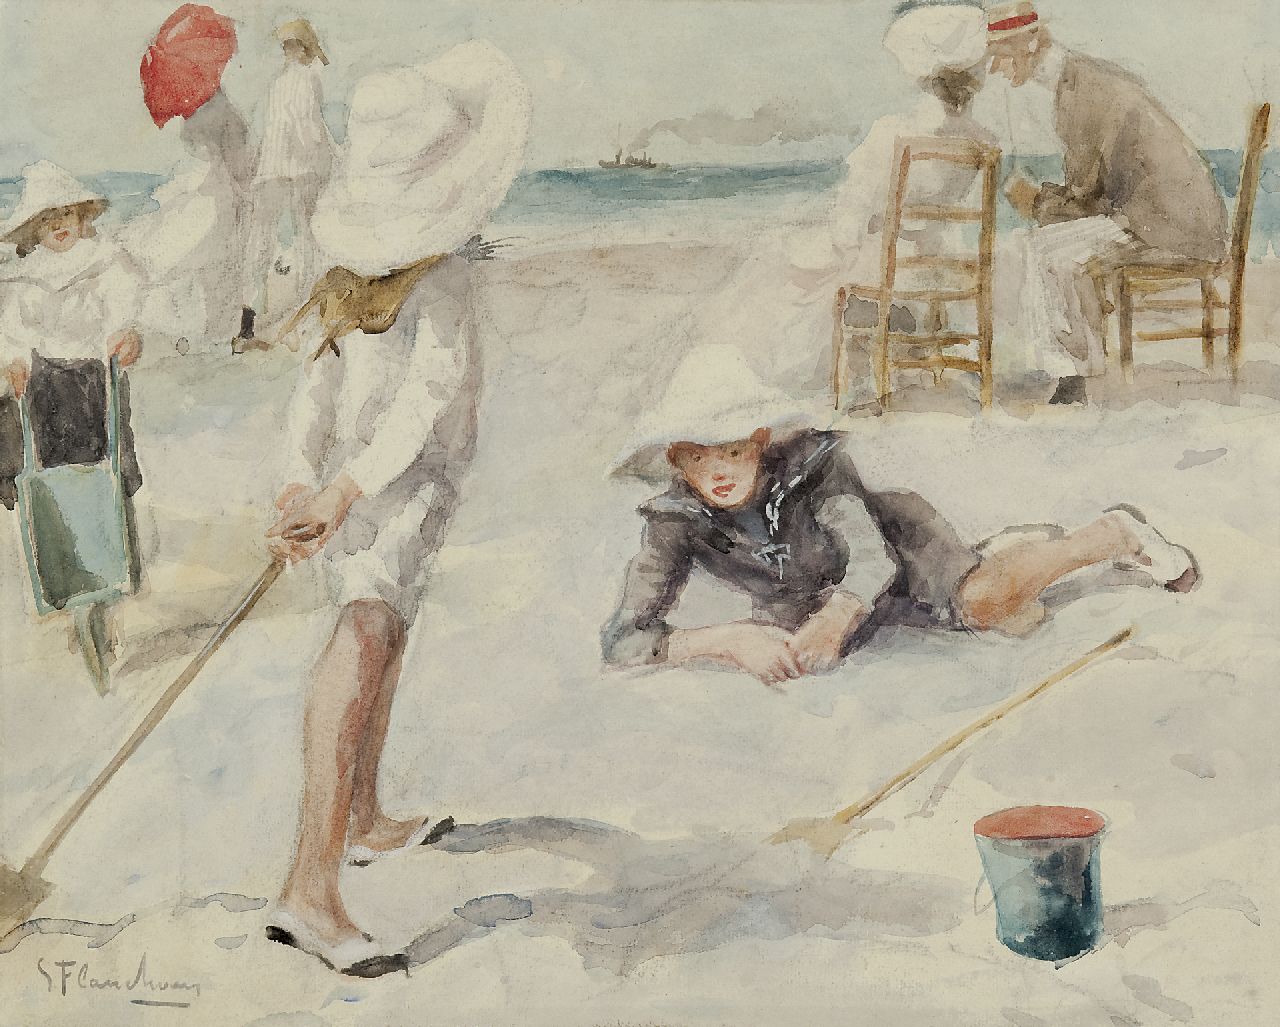 Flasschoen G.  | Gustave Flasschoen, On the beach, Aquarell auf Papier 35,1 x 43,4 cm, signed l.l.